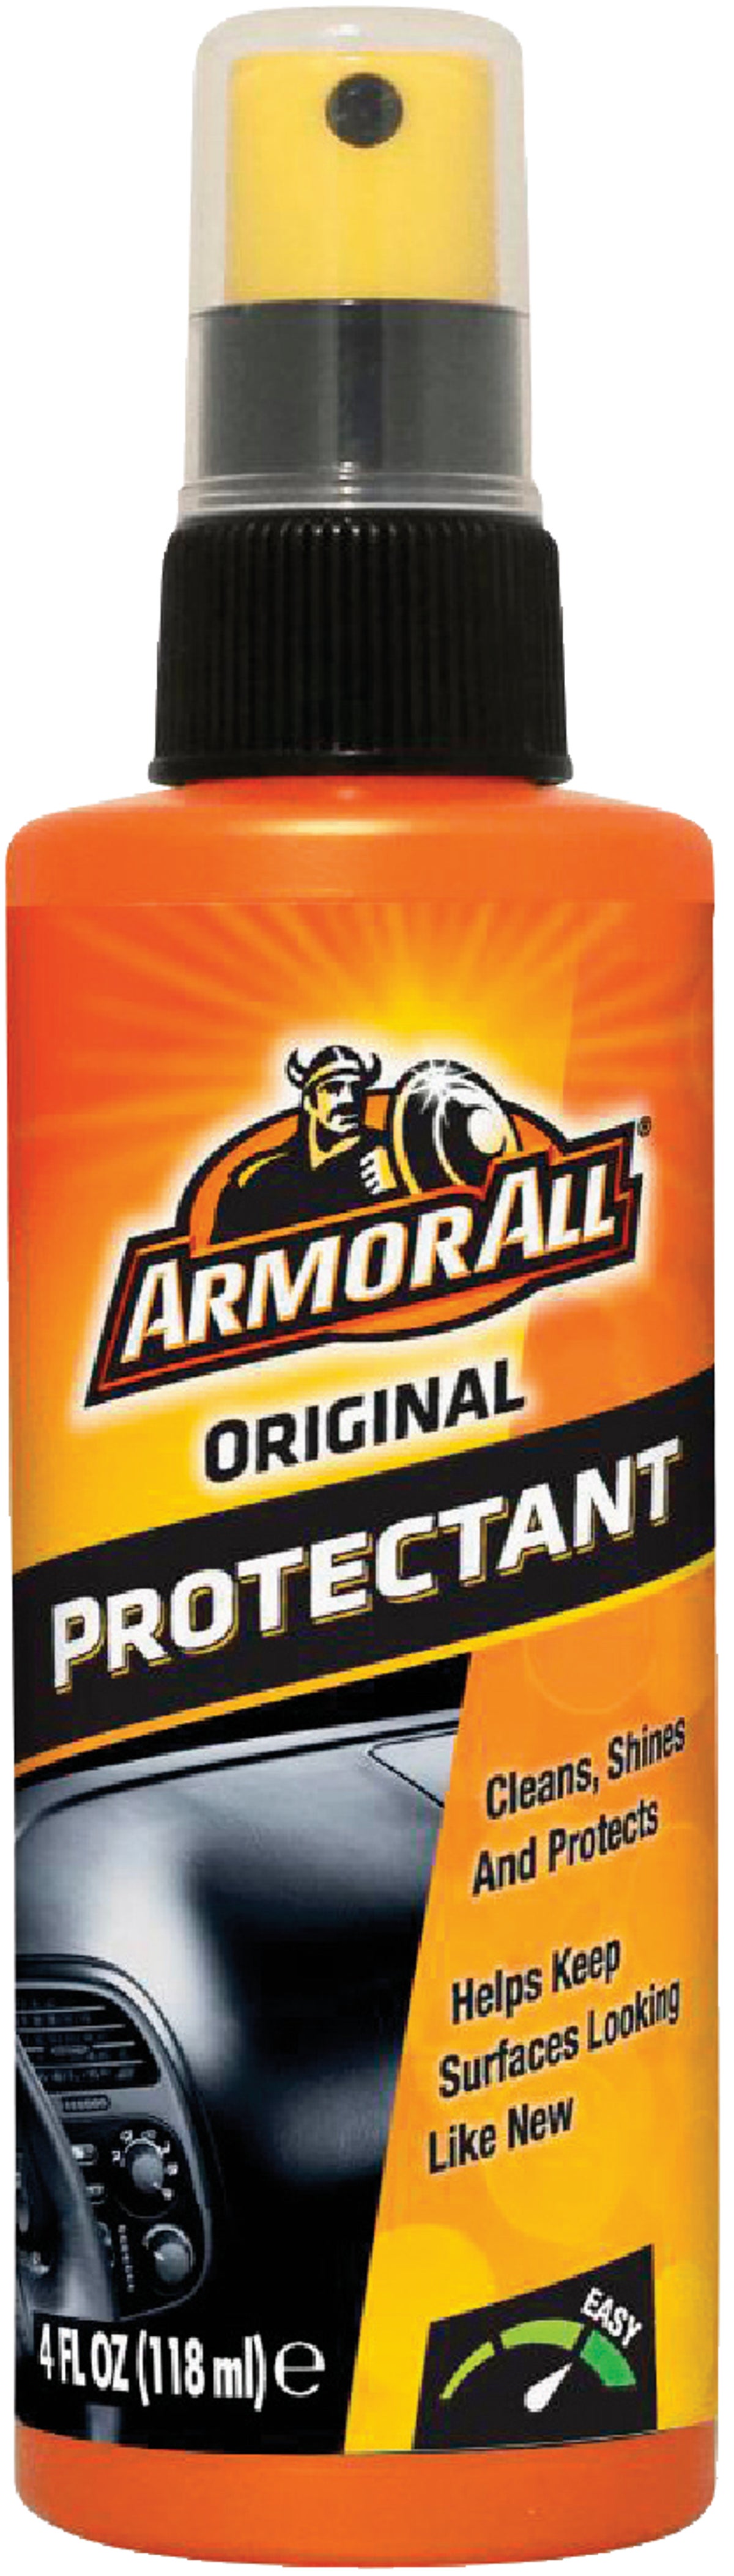 Armor All Original Protectant - 64 oz